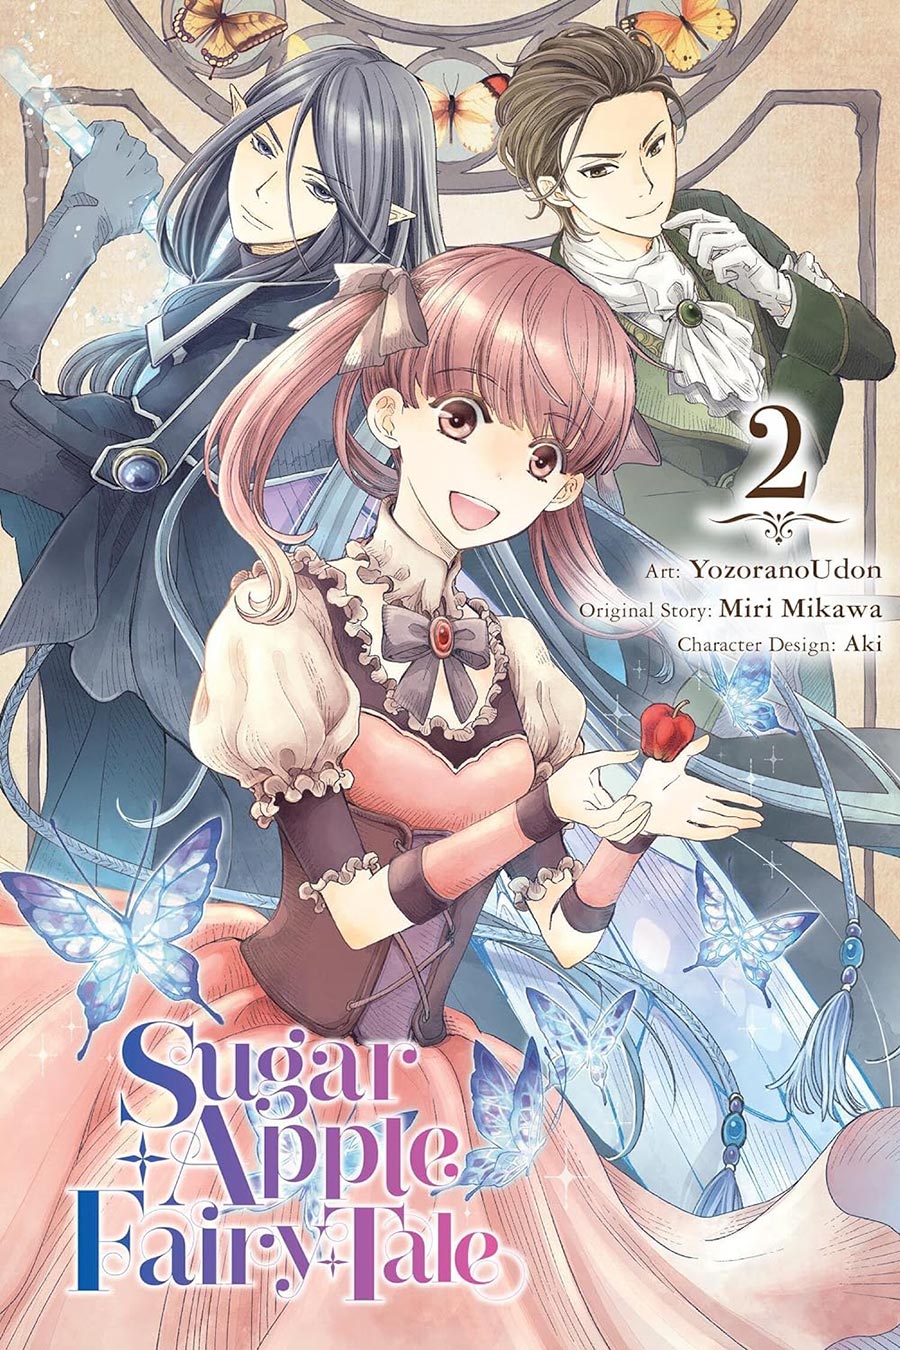 Sugar Apple Fairy Tale Vol 2 GN